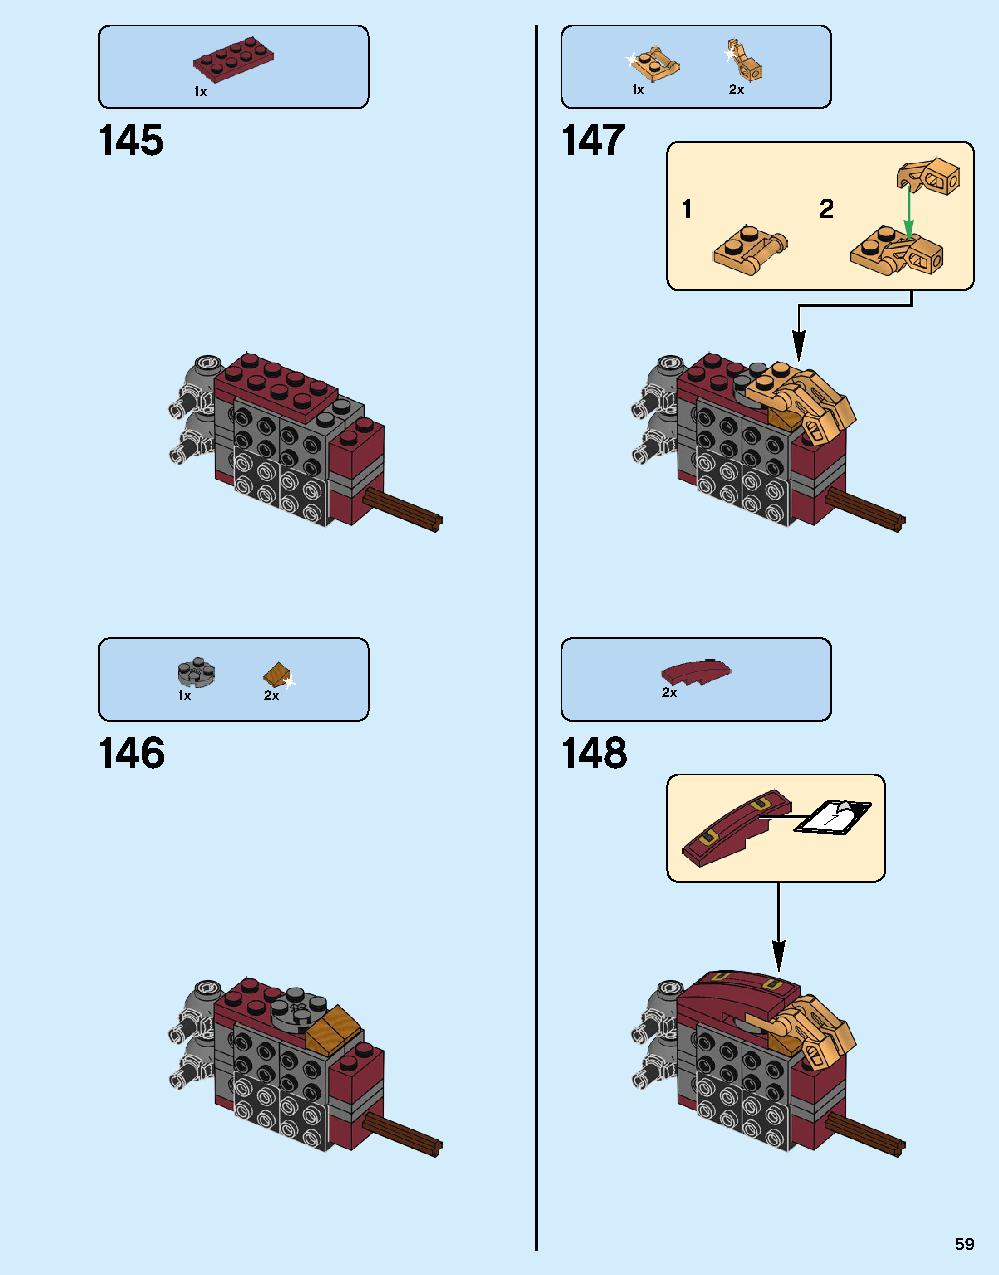 ハルクバスター：ウルトロン・エディション 76105 レゴの商品情報 レゴの説明書・組立方法 59 page